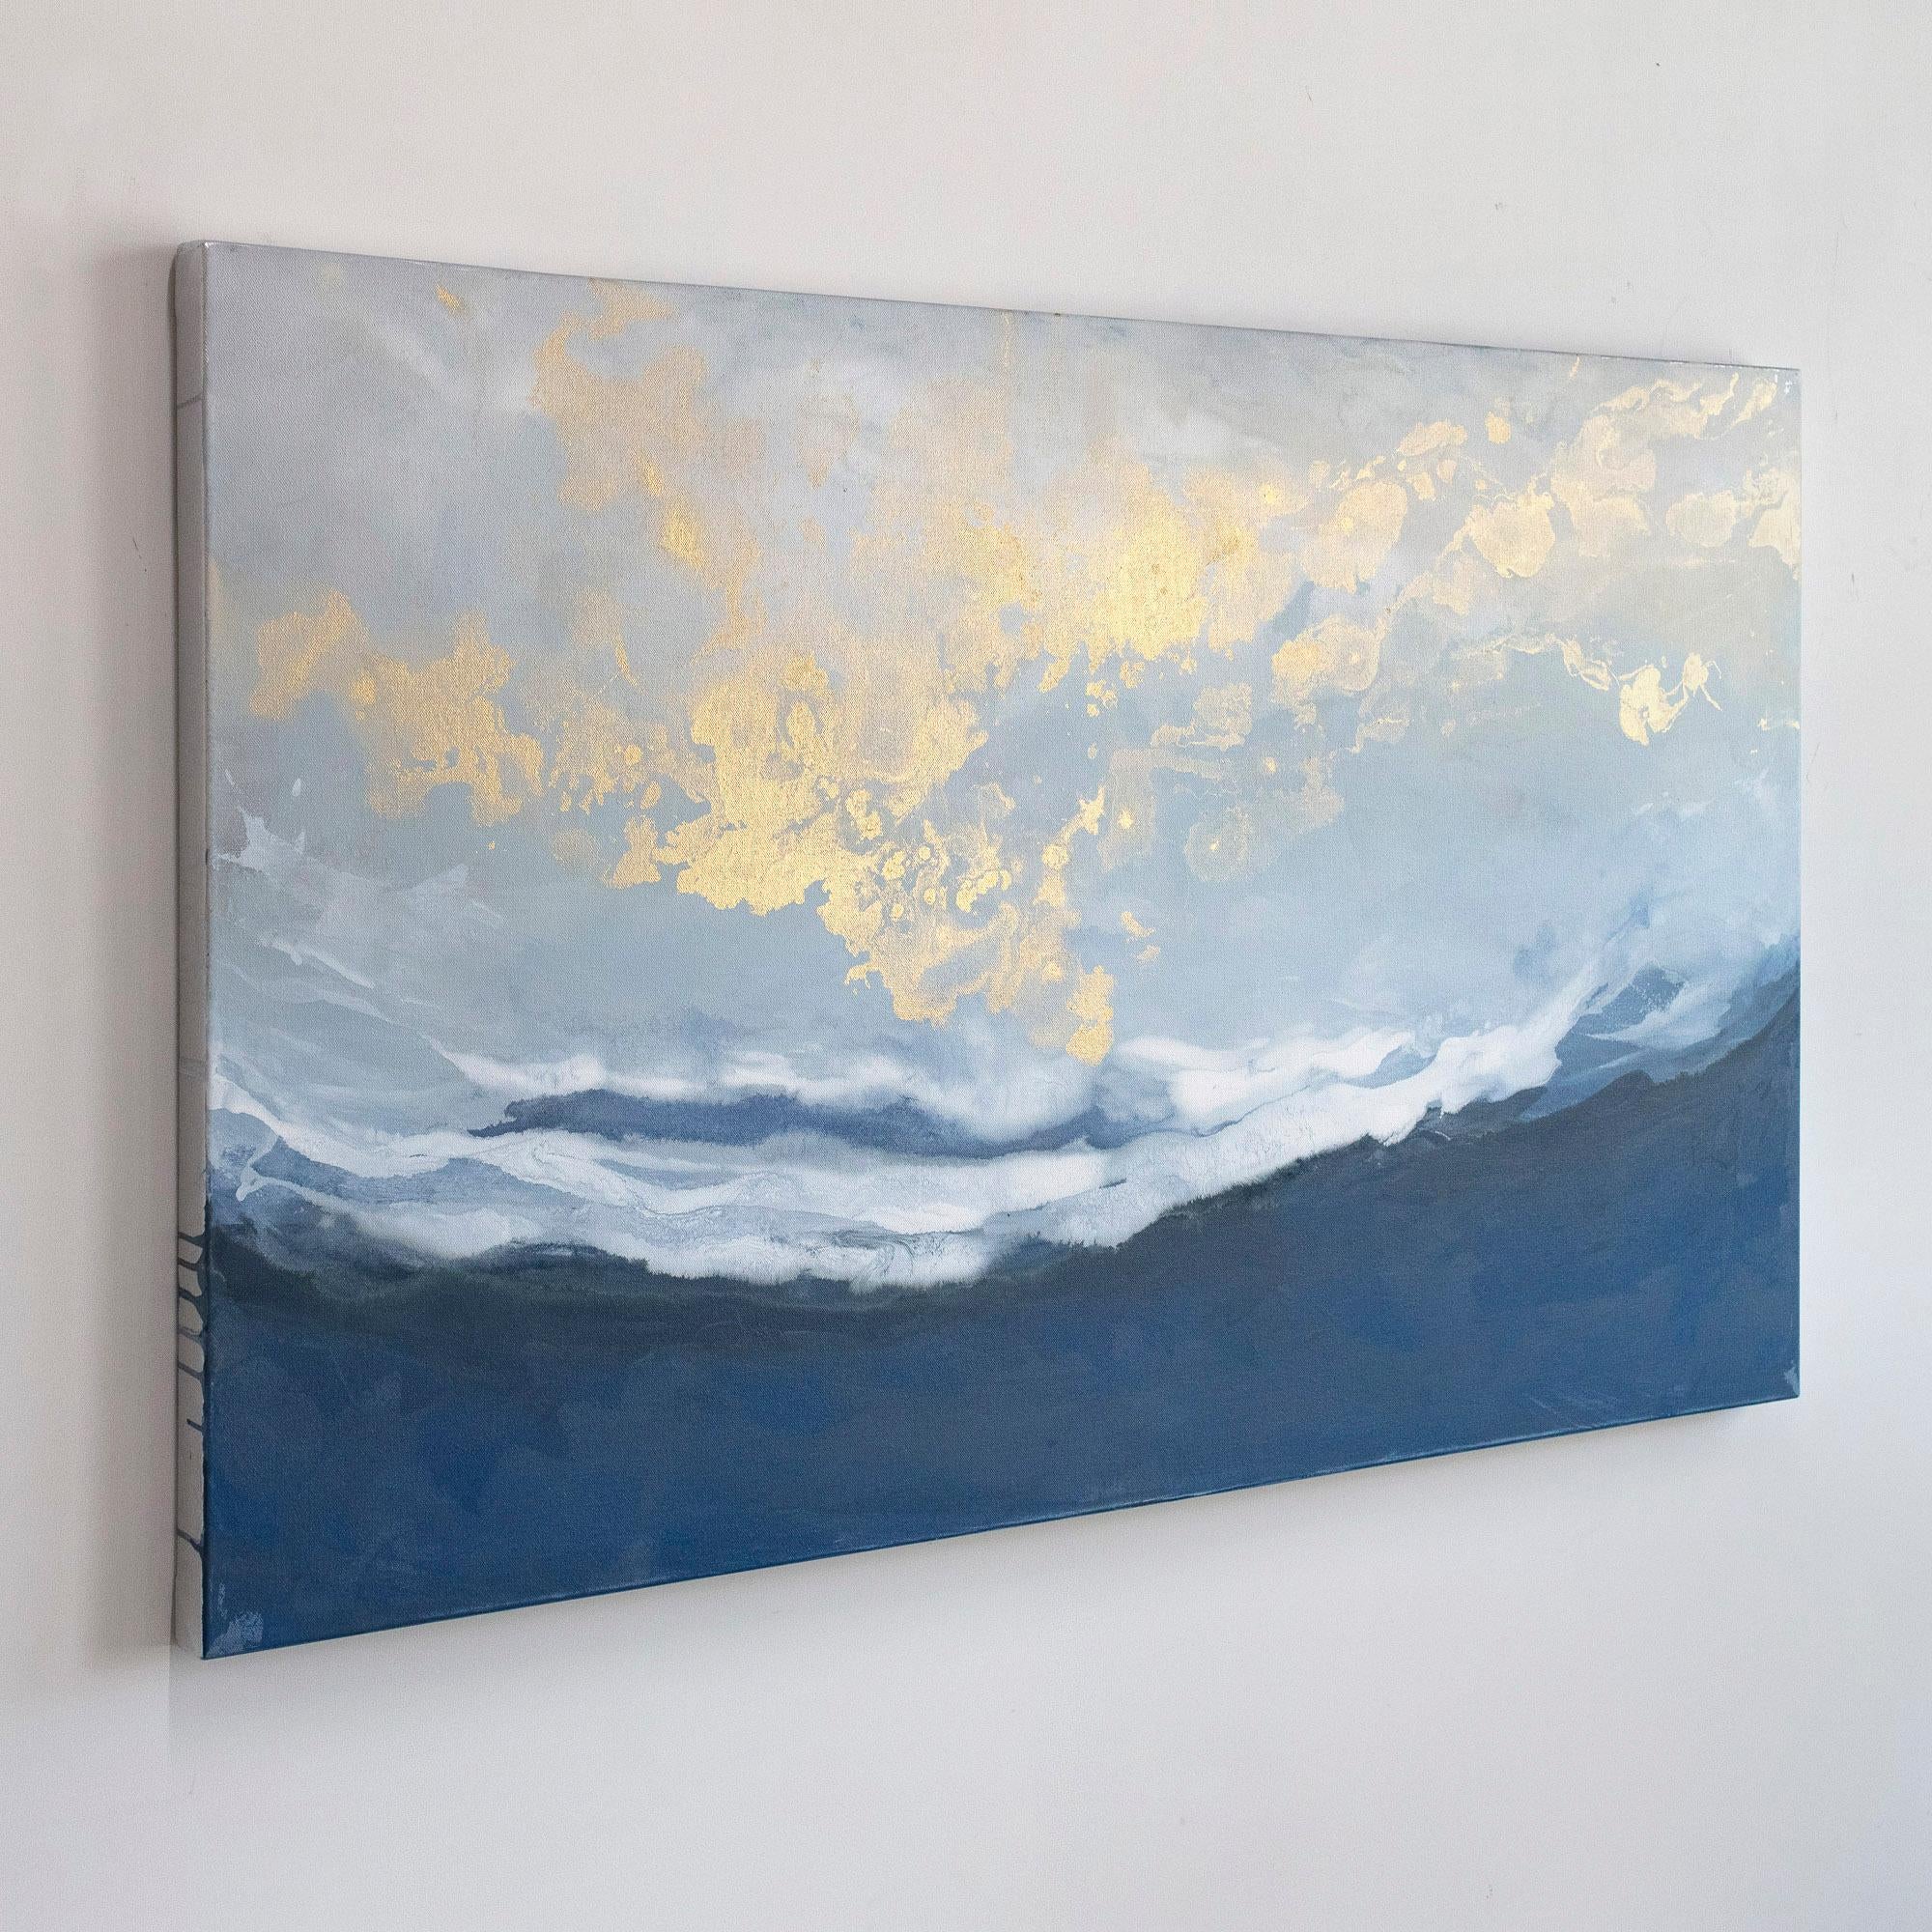 Ce tableau abstrait de Julia Contacessi présente une palette froide avec des lavis de bleu profond et de blanc, et de subtils accents métalliques en haut de la composition. La peinture est réalisée sur une toile enveloppée dans une galerie avec des